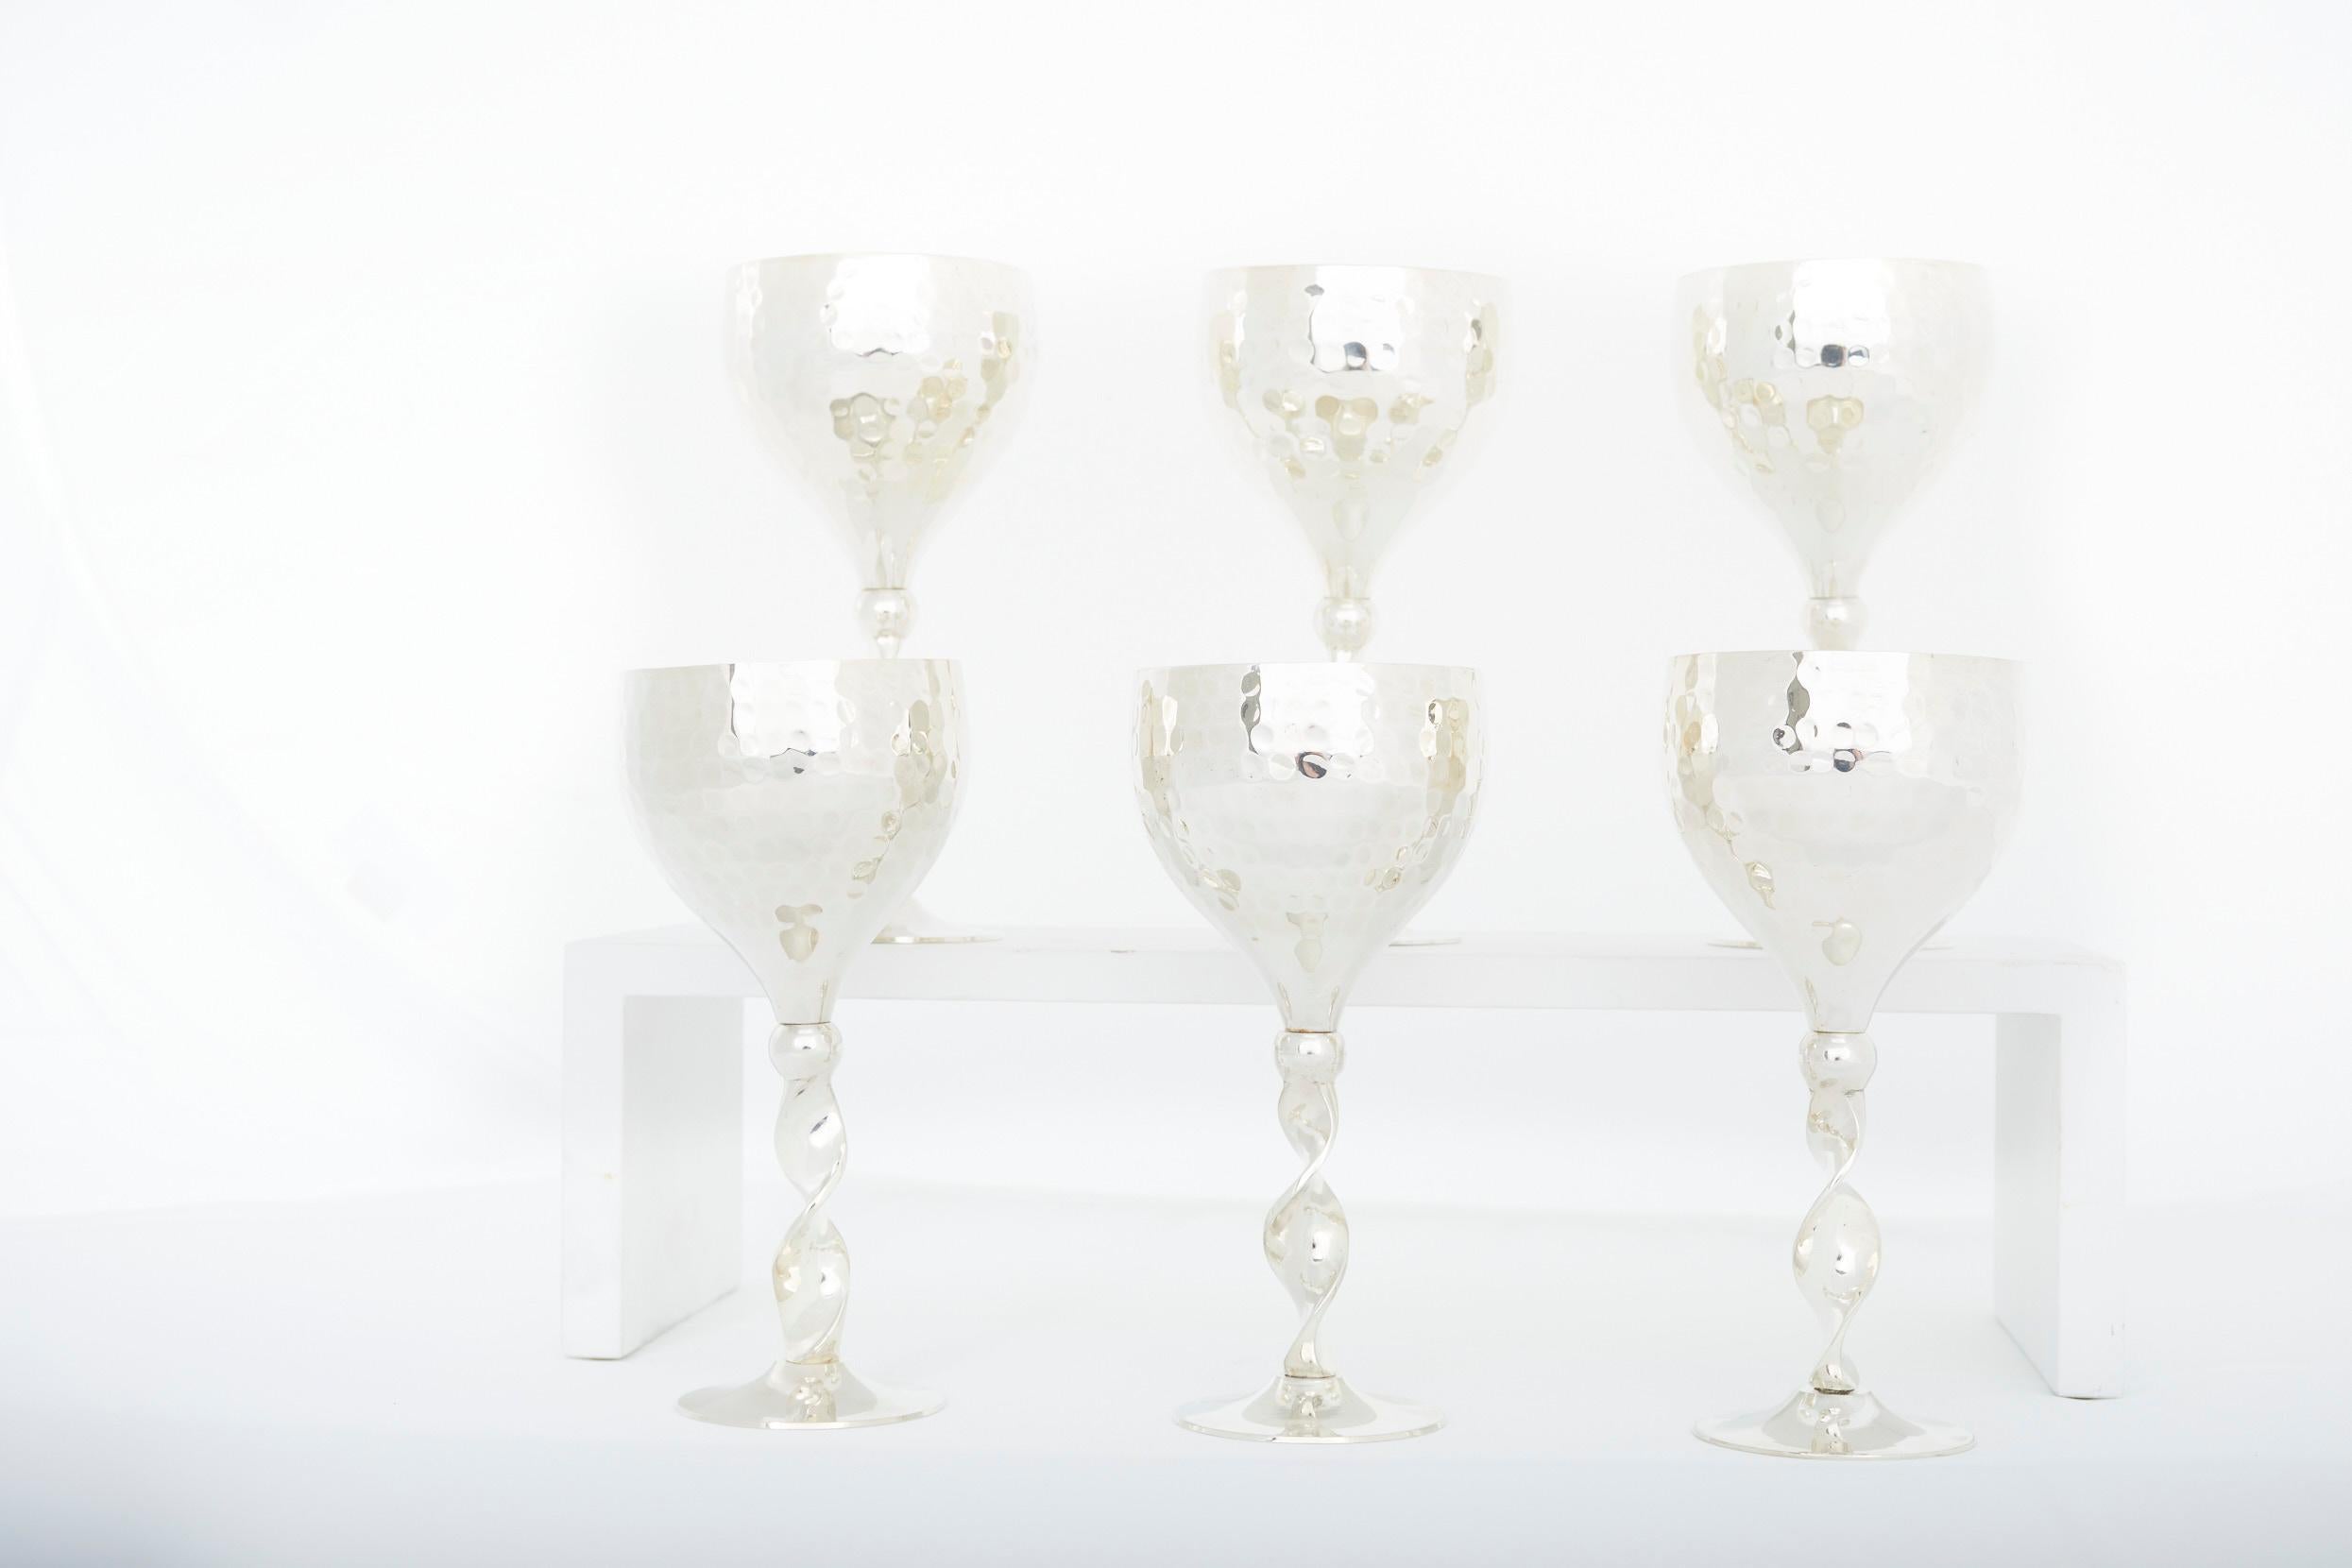 Schöne englische Handwerkskunst Silber Platte Barware / Geschirr Trinkbecher Service für sechs Personen. Jeder Silberbecher hat ein gehämmertes Detail auf einem gedrehten Stiel. Jedes Stück ist in sehr gutem Zustand. Geringfügige alters- und